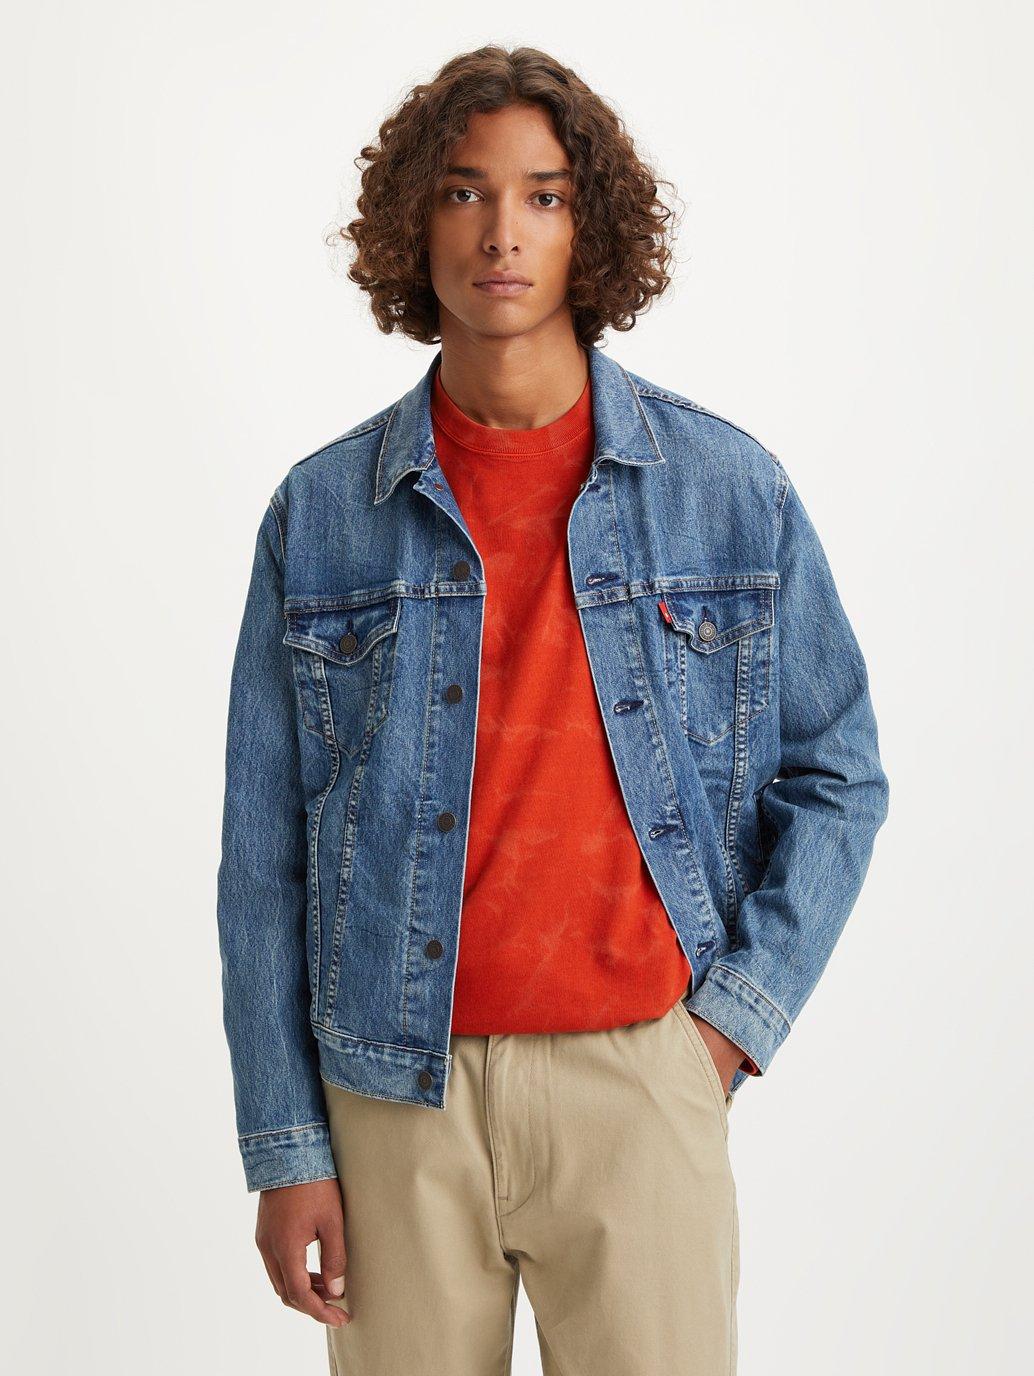 Buy Levi's® Men's Trucker Jacket | Levis® Official Online Store MY